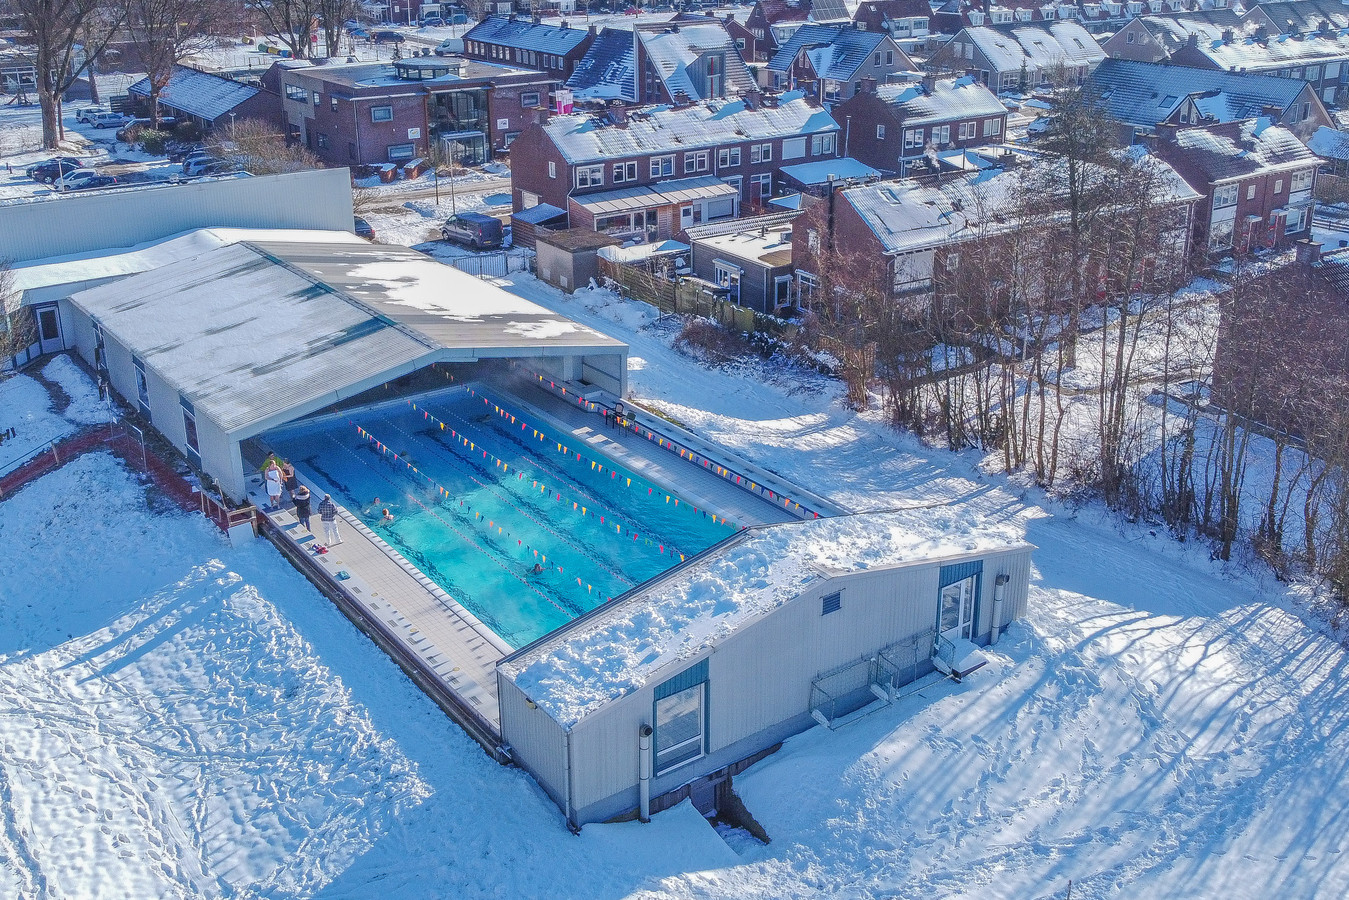 Er komt een onderzoek naar de haalbaarheid van een nieuw zwembad in Zwartsluis, in plaats van renovatie van het huidige zwembad De Kragge, hier op een winters plaatje met open schuifdak.